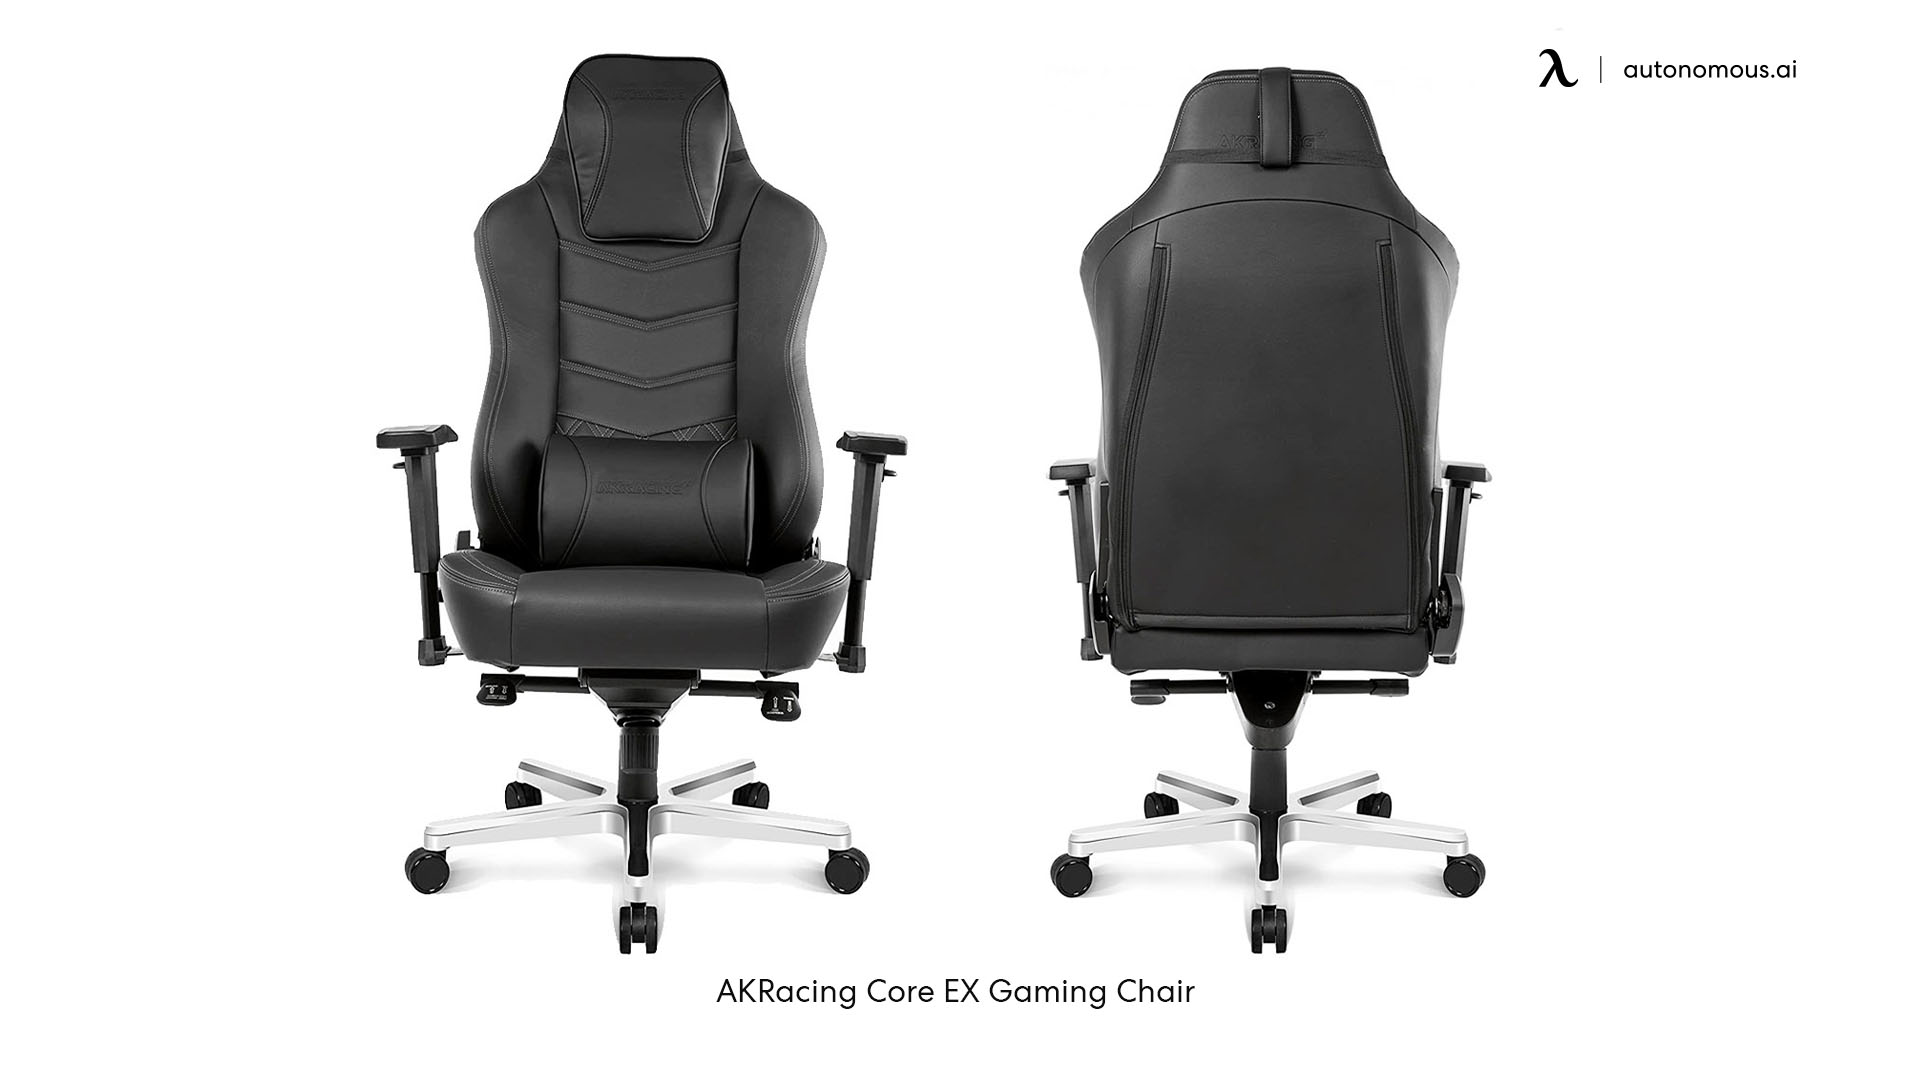 AKRacing reclining gaming chair